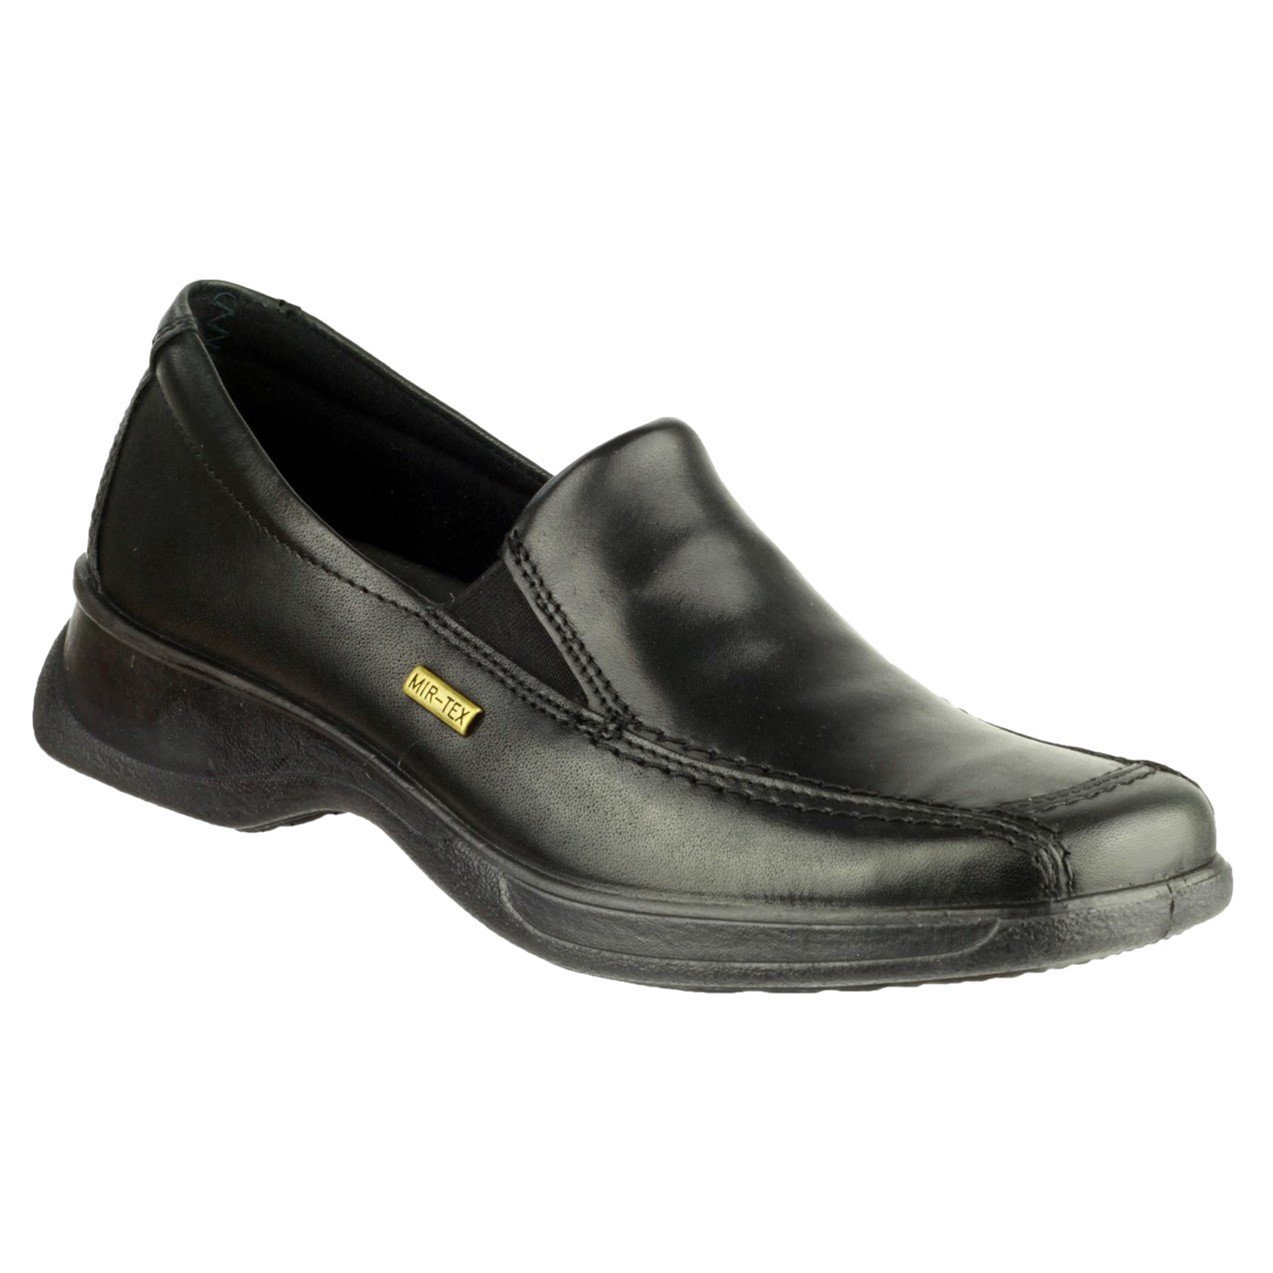 Cotswold Women's Hazelton 2 Waterproof Shoe Black 32983 - Black 6